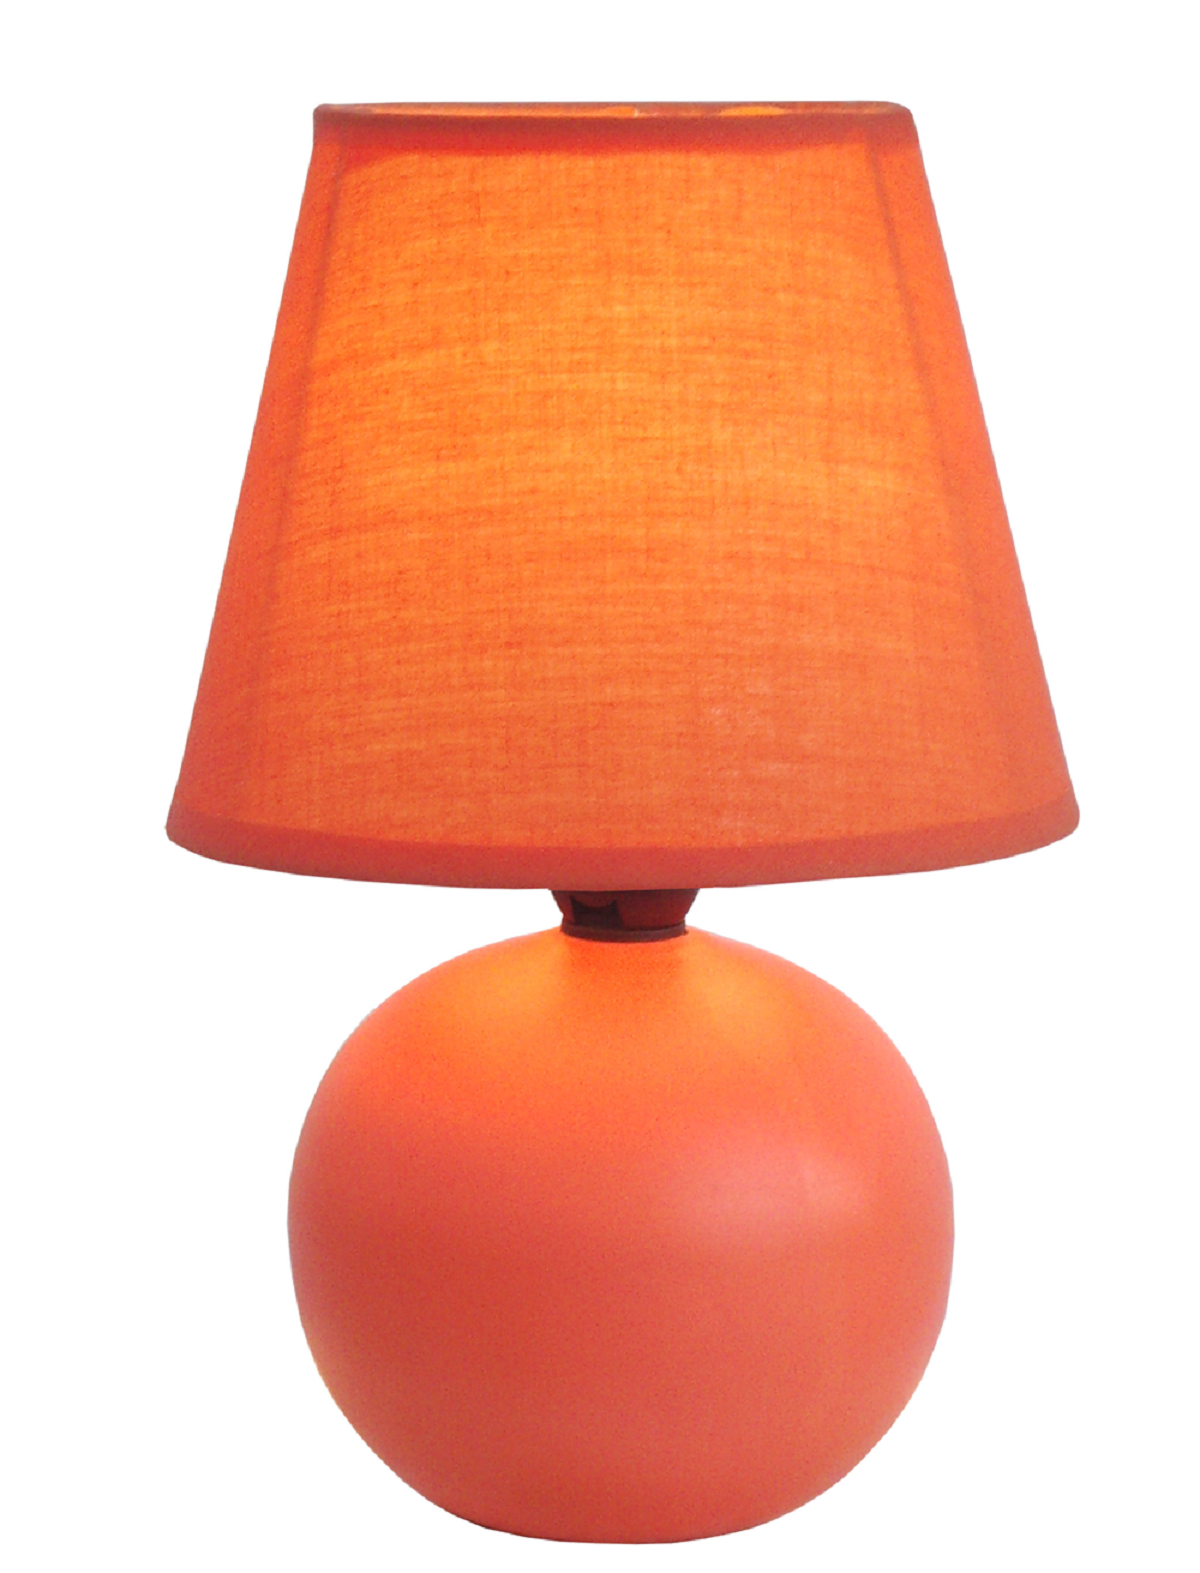 Simple Designs Orange Ceramic Globe Table Lamp